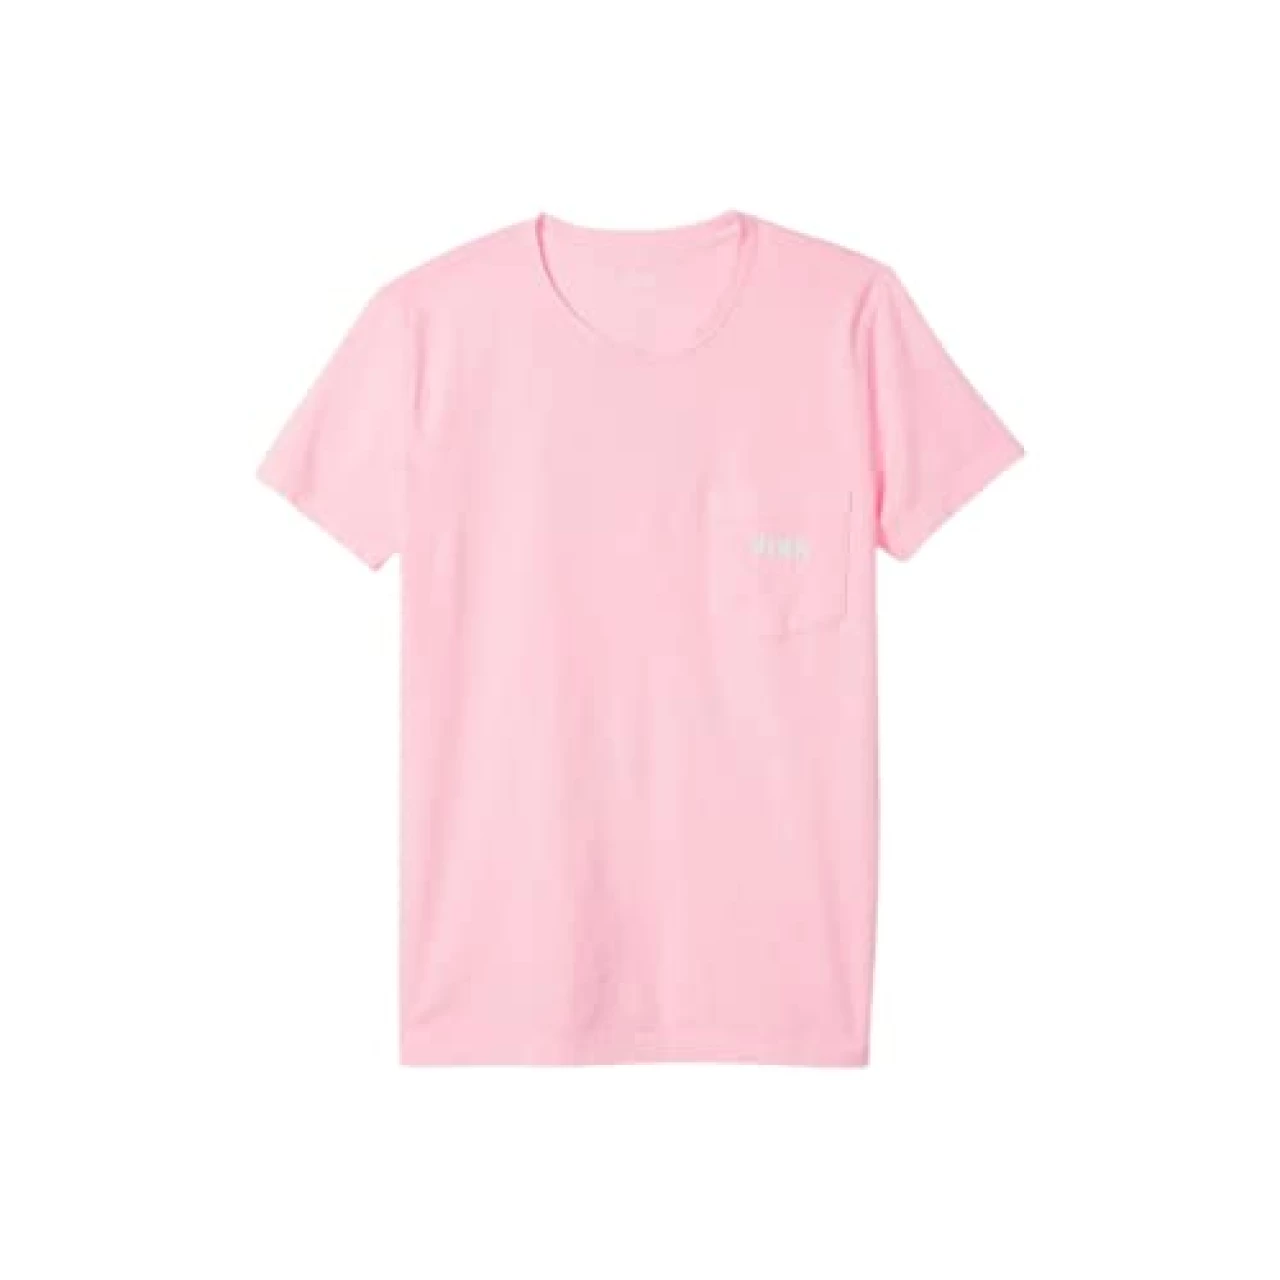 Victoria&rsquo;s Secret Pink Cotton Short Sleeve Campus T Shirt, Women&rsquo;s T Shirt, Pink (L)